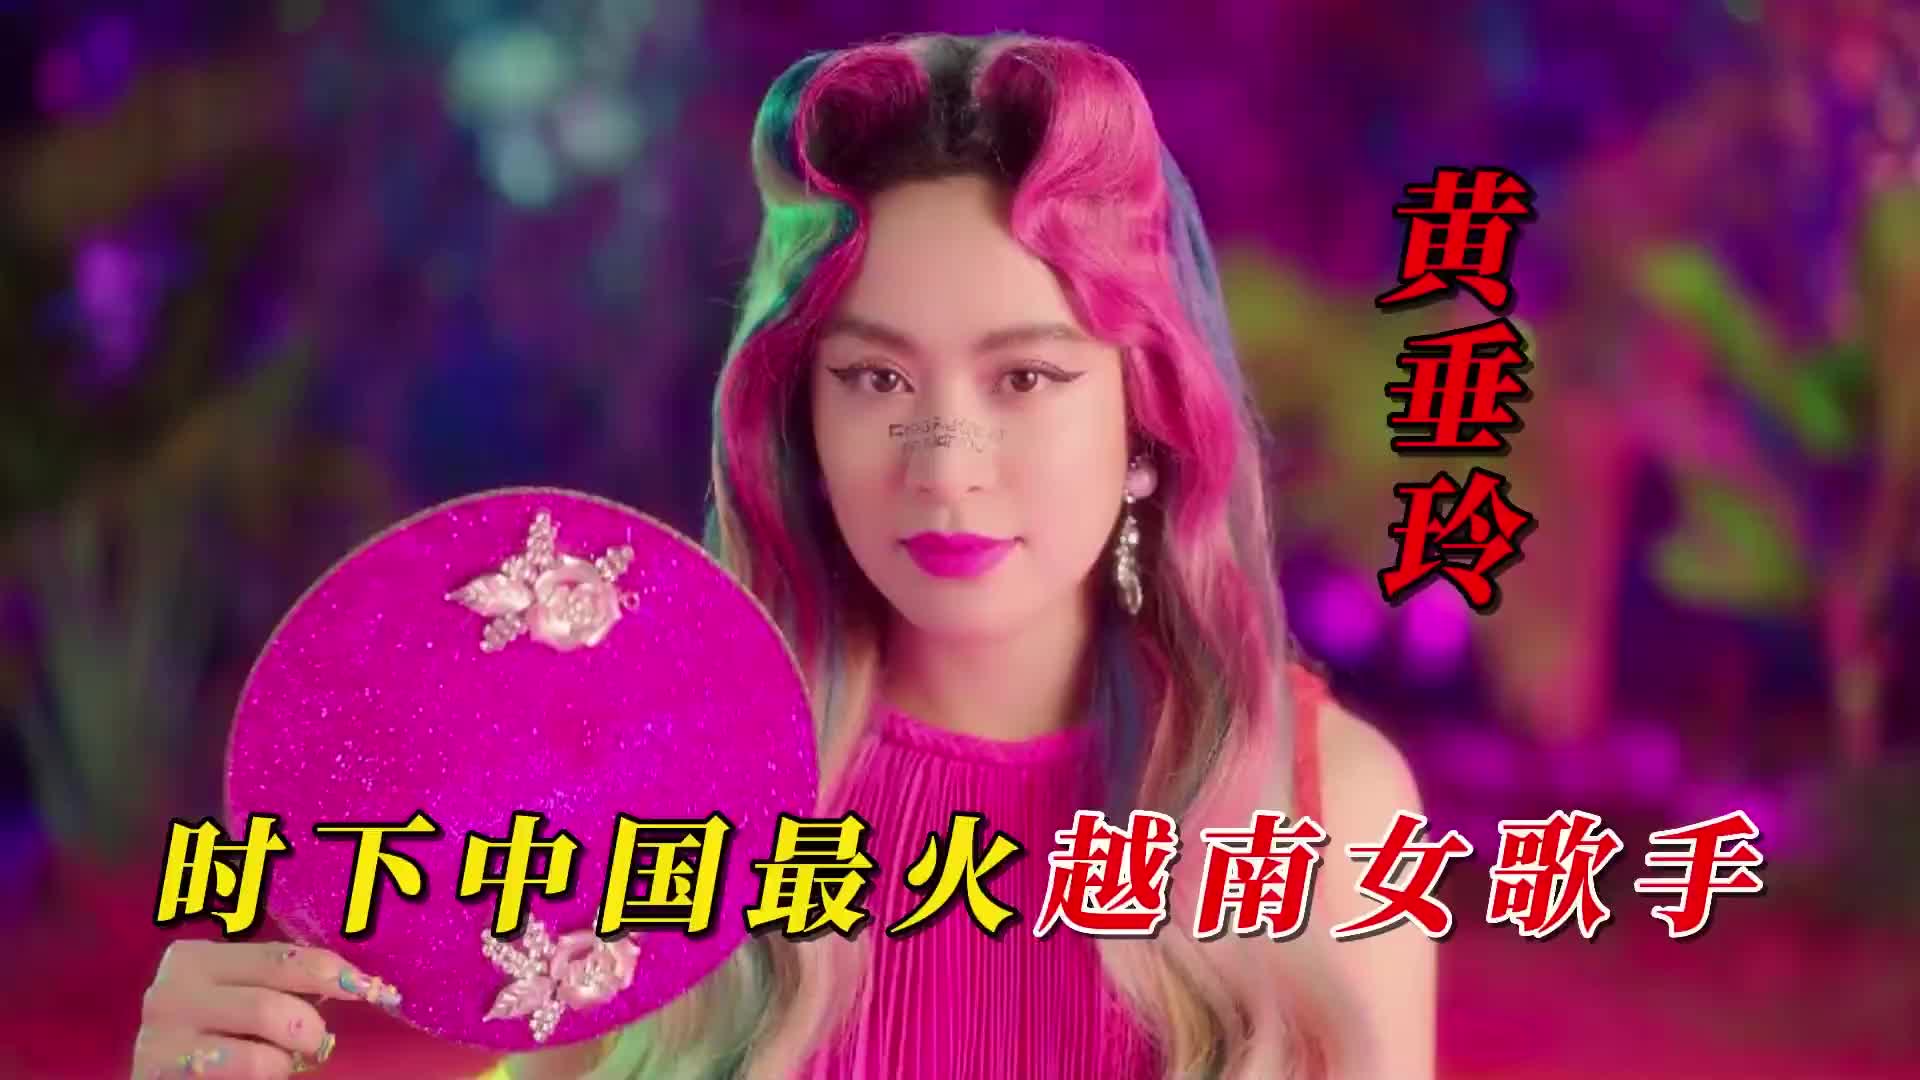 时下中国最火越南女歌手深受各大短视频平台的喜爱越南顶流黄垂玲